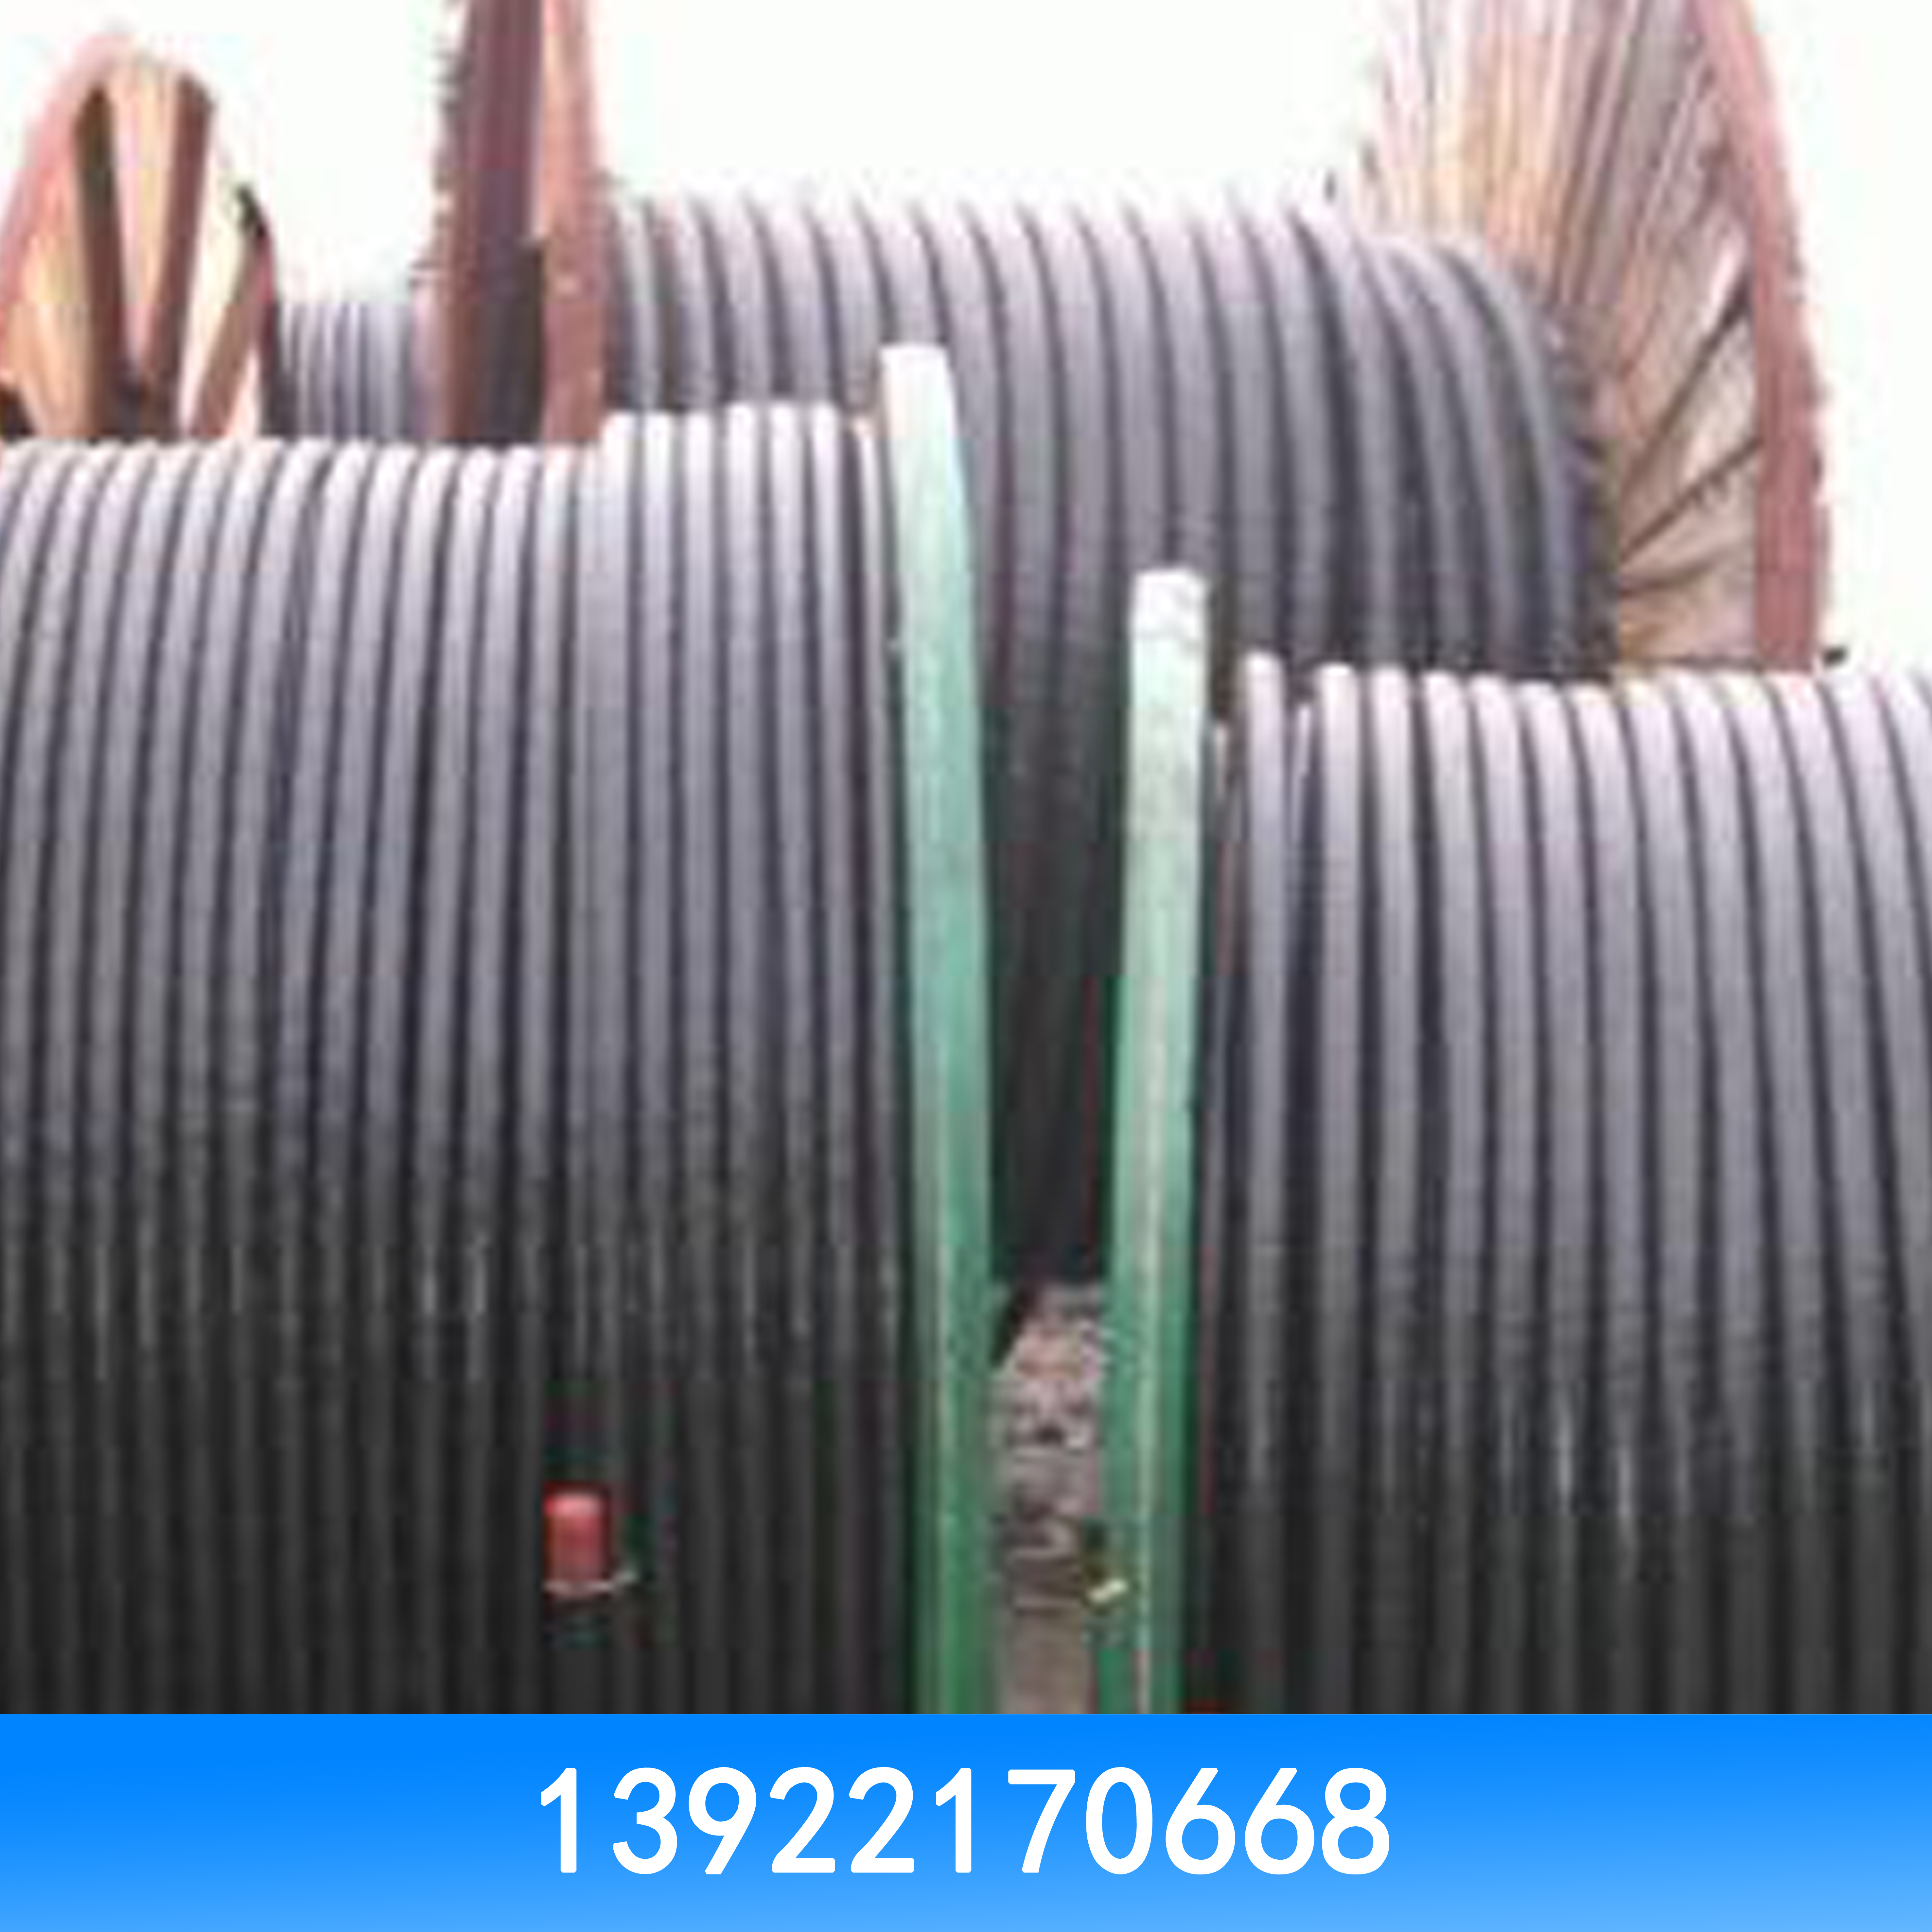 电线电缆回收 电线电缆回收价格 电线电缆回收批发 电线电缆回收厂家图片